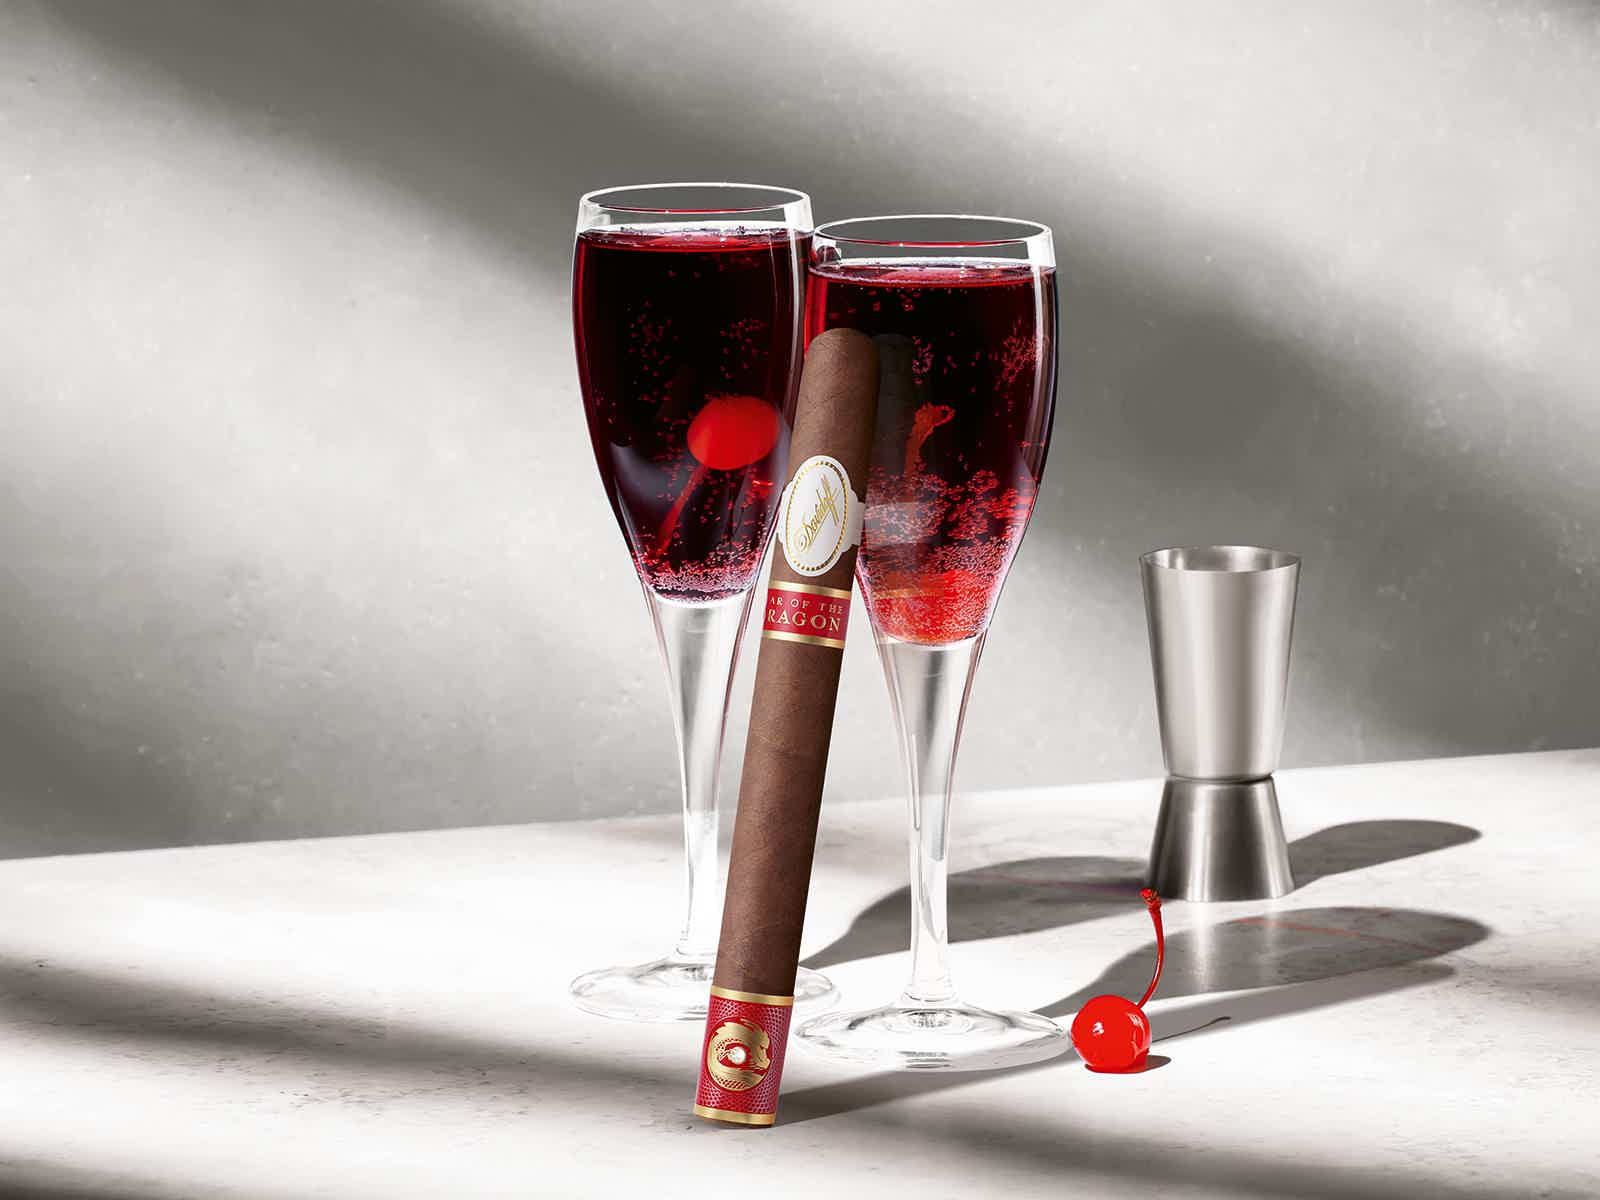 Die Davidoff Year of the Dragon Limited-Edition-Zigarre, die gegen eines von zwei mit Kir Royal gefüllten Gläsern besteht.